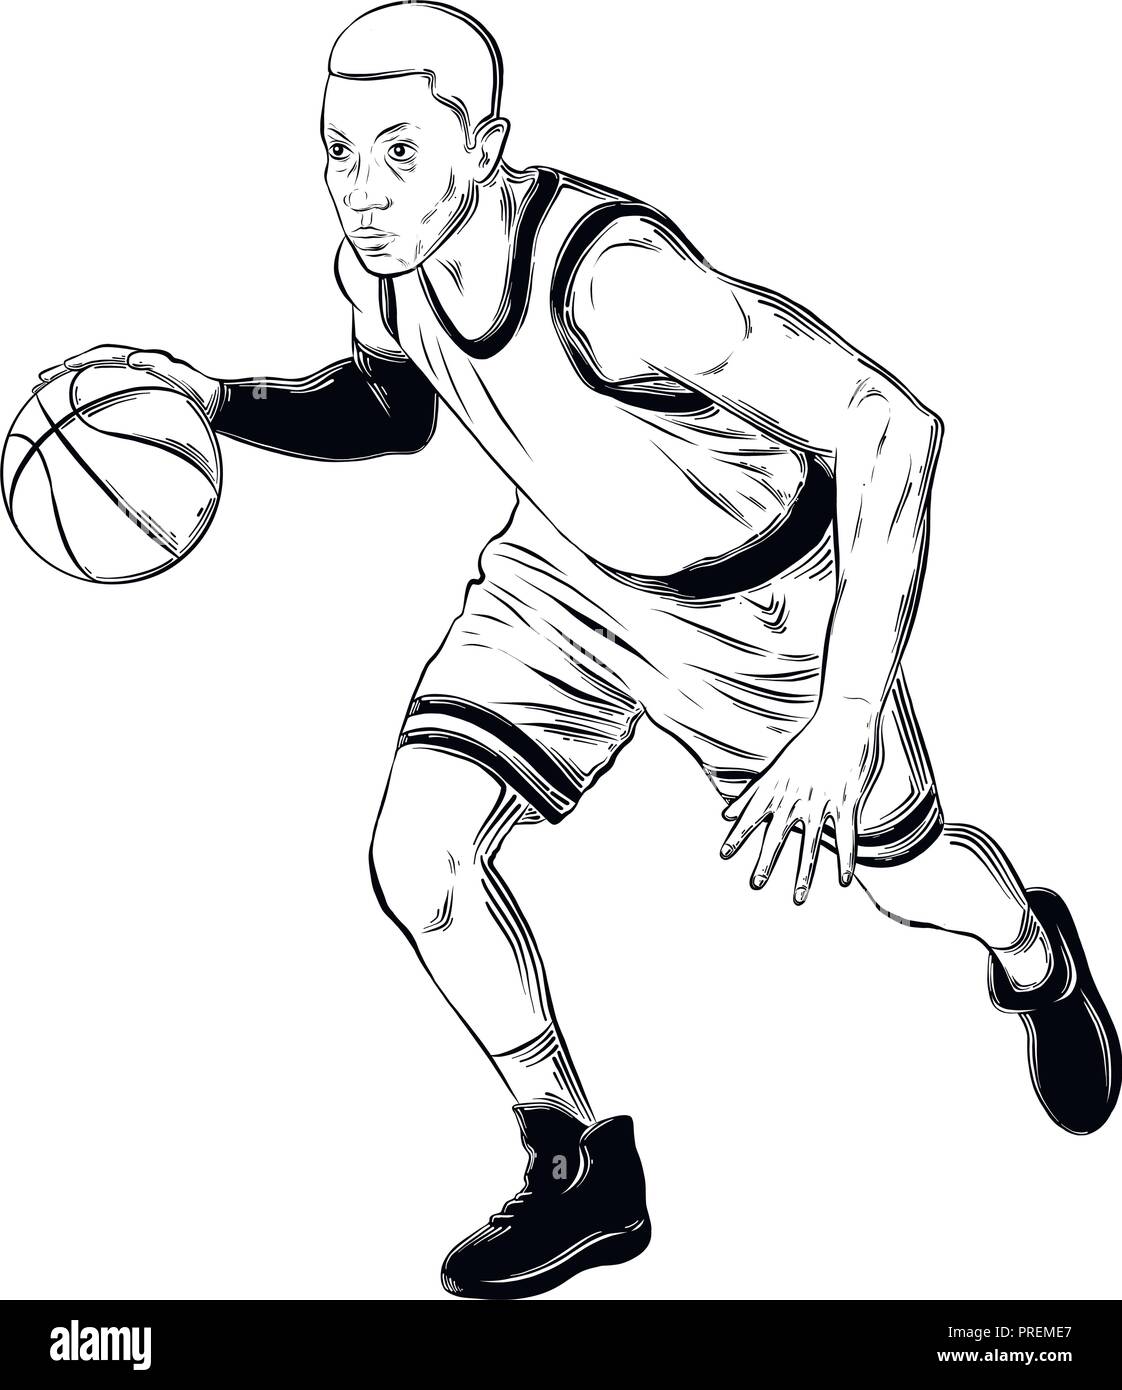 Hand gezeichnete Skizze der Basketballspieler in schwarz auf weißem  Hintergrund. Detaillierte Vintage Style Zeichnung. Vector Illustration  Stock-Vektorgrafik - Alamy